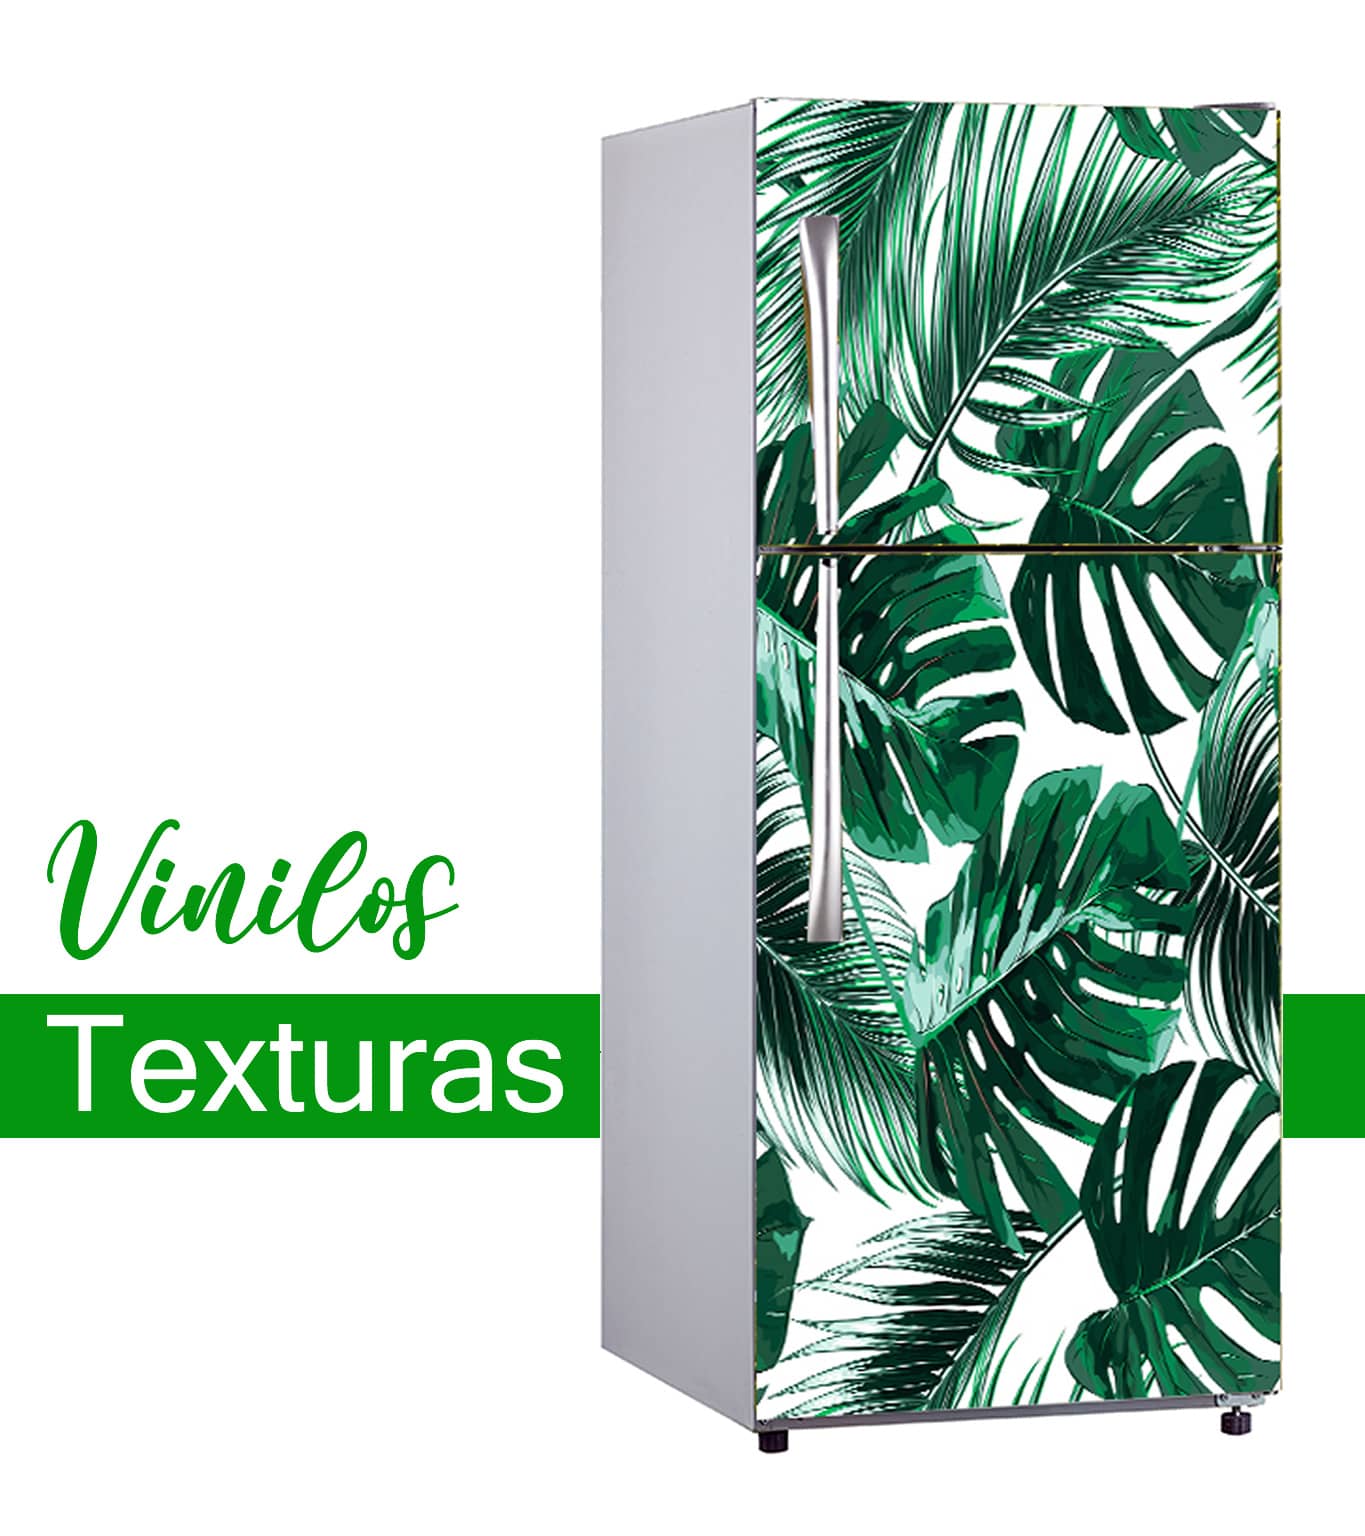 Categoría Texturas Móvil de vinilos decorativos para frigoríficos